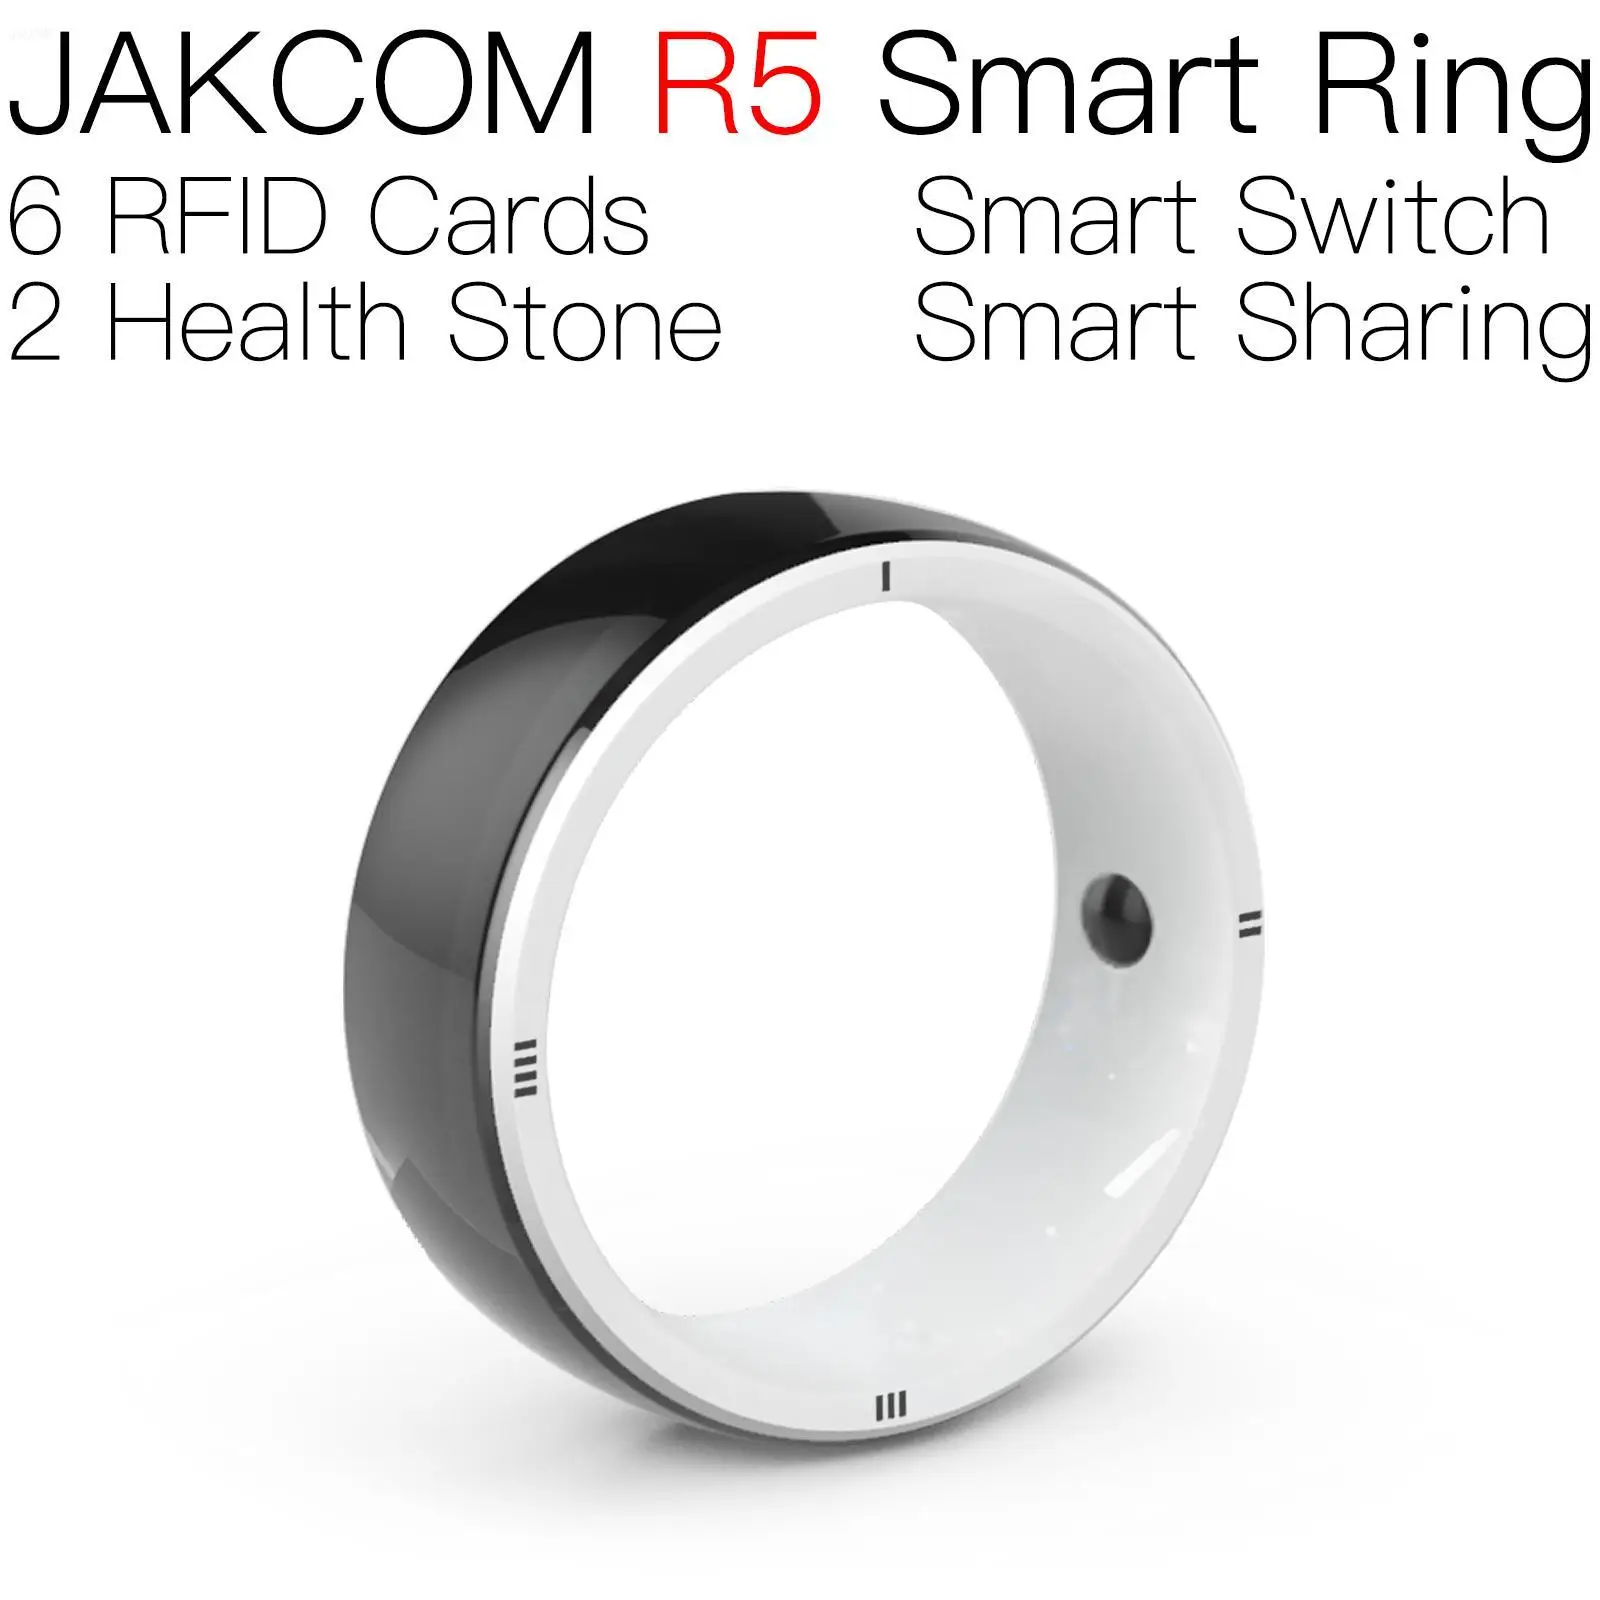 

JAKCOM R5 Smart Ring Super value as ic lm393 uid rfid token 29 mm alimunium birds ring copieur nfc metal mini caterpillar cat